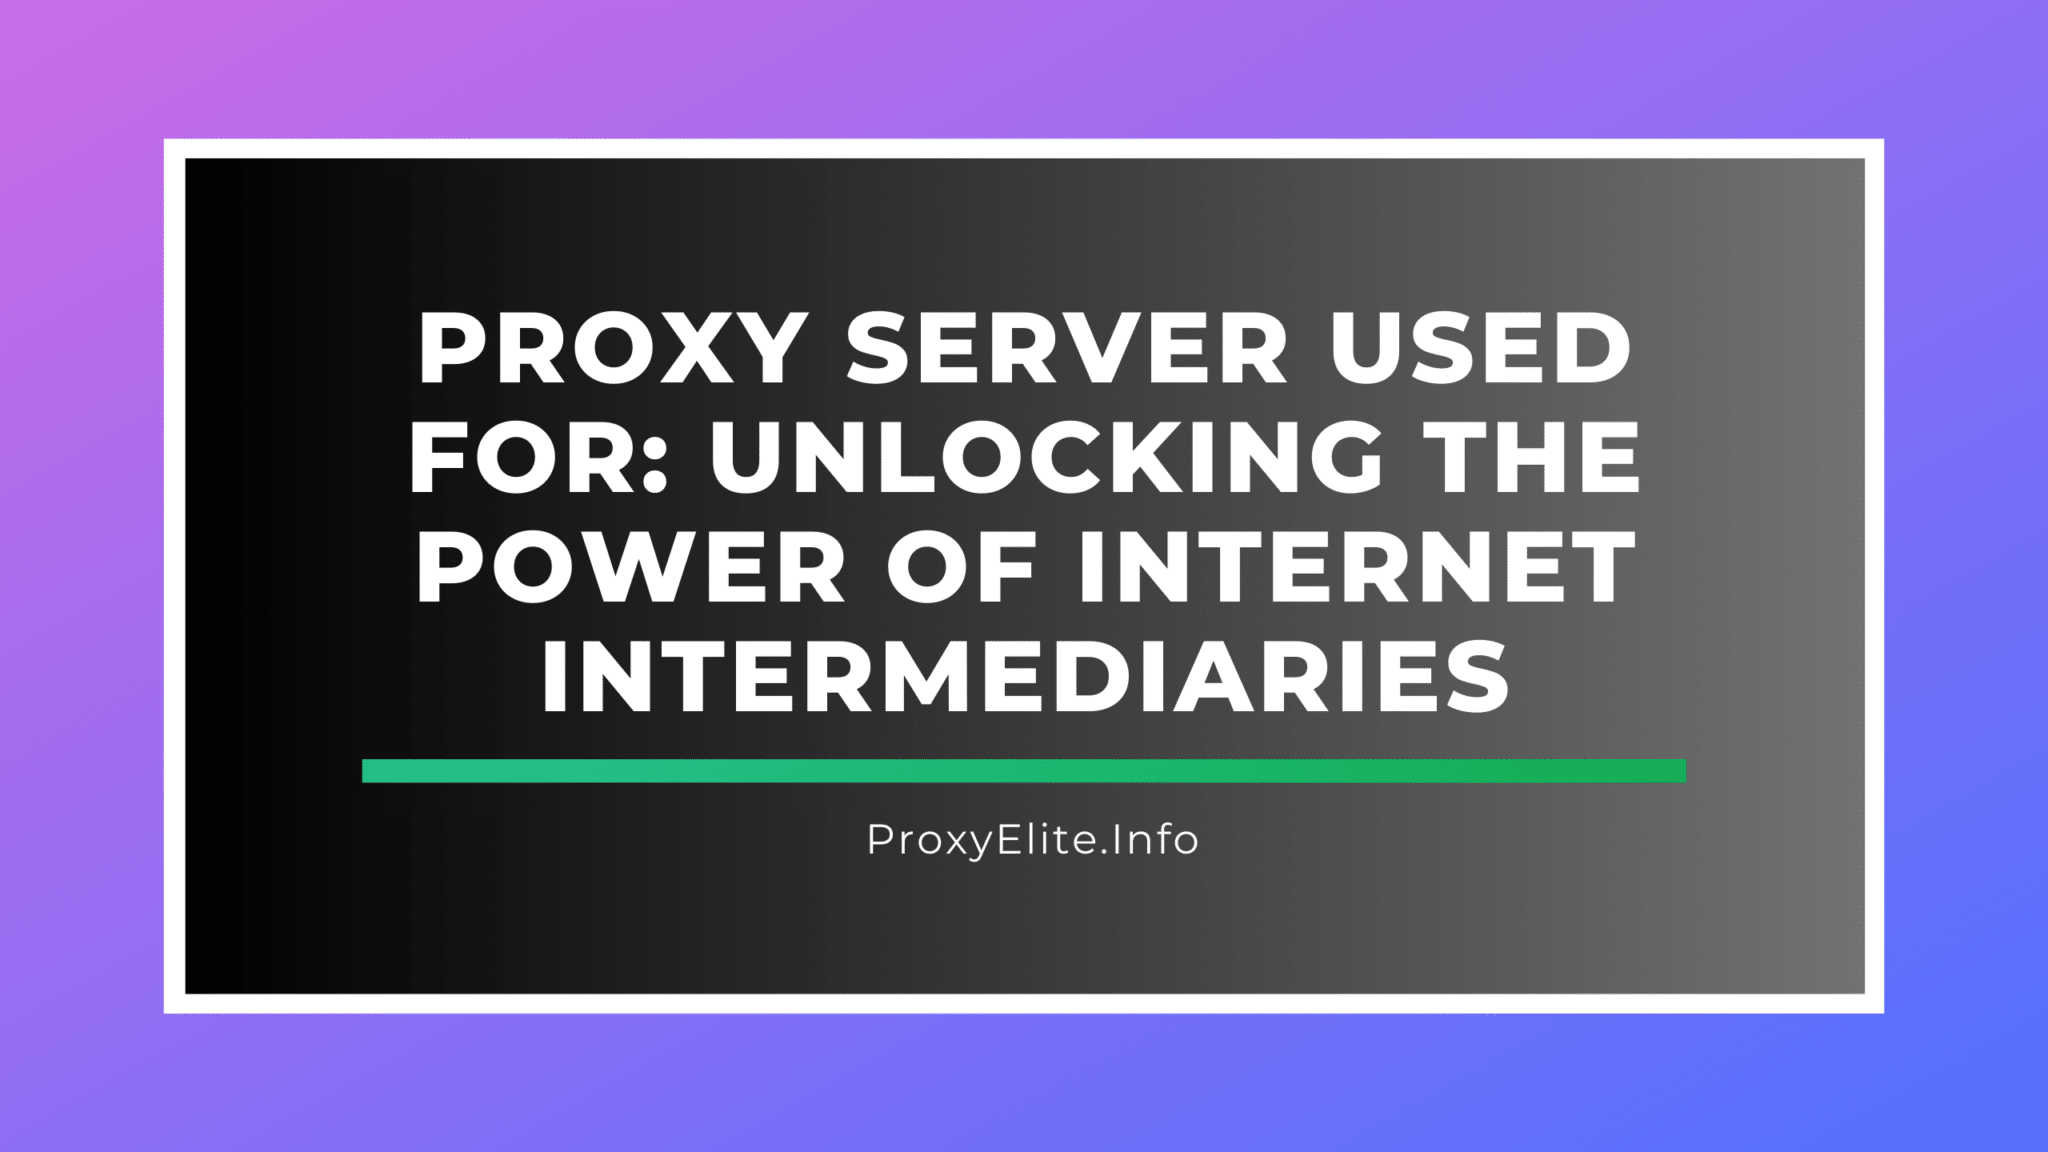 Servidor proxy usado para: Desbloquear o poder dos intermediários da Internet